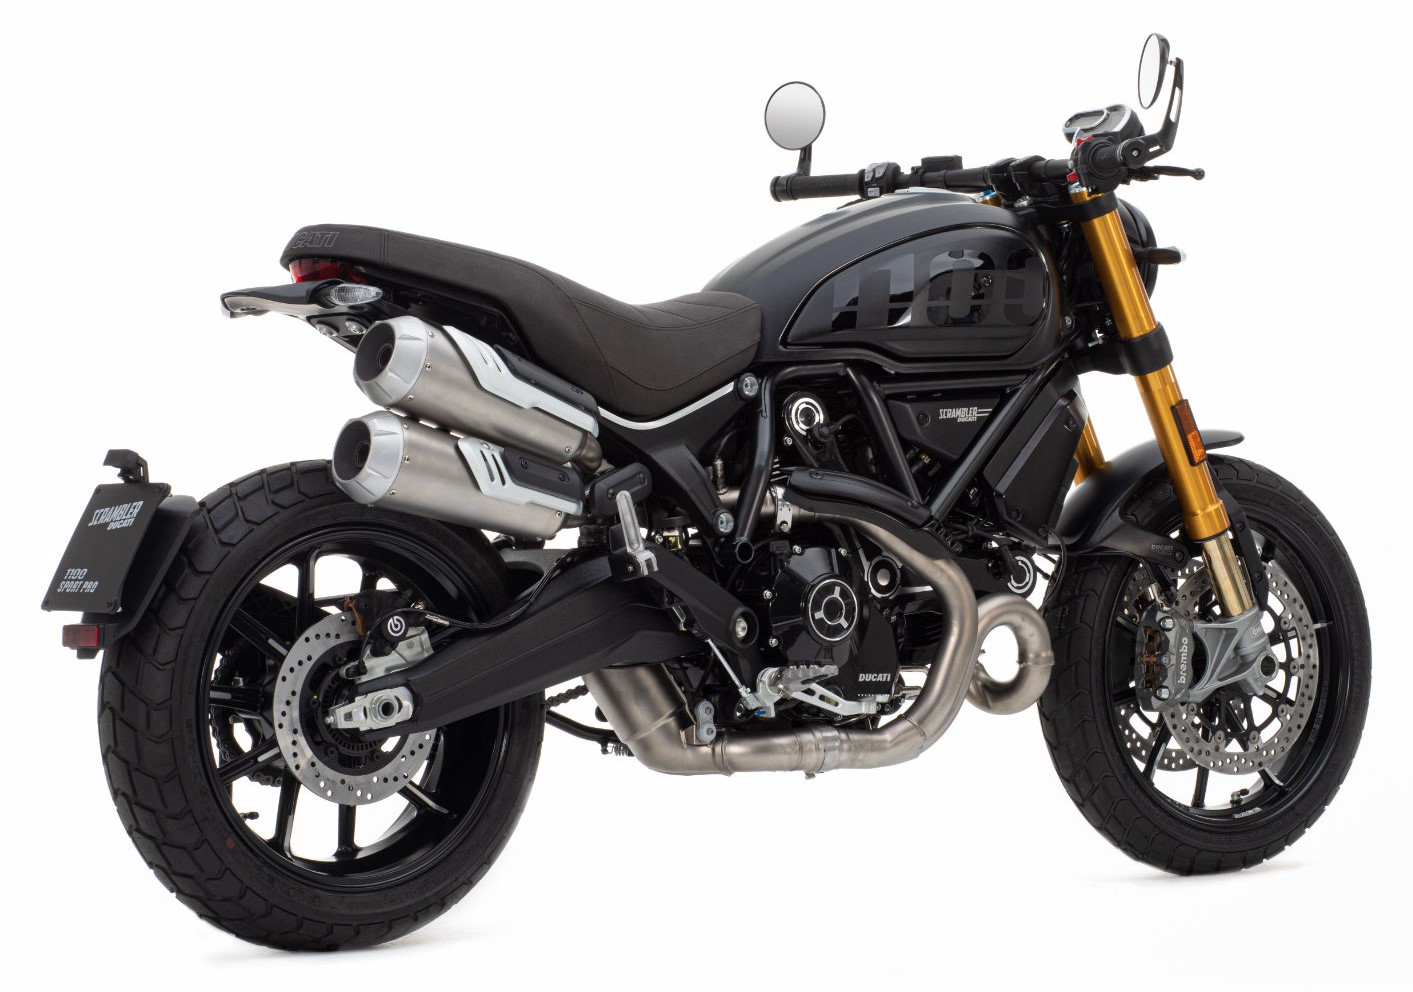 Ducati Scrambler 1100 Sport Pro Motorbikes For Sale The Bike Market